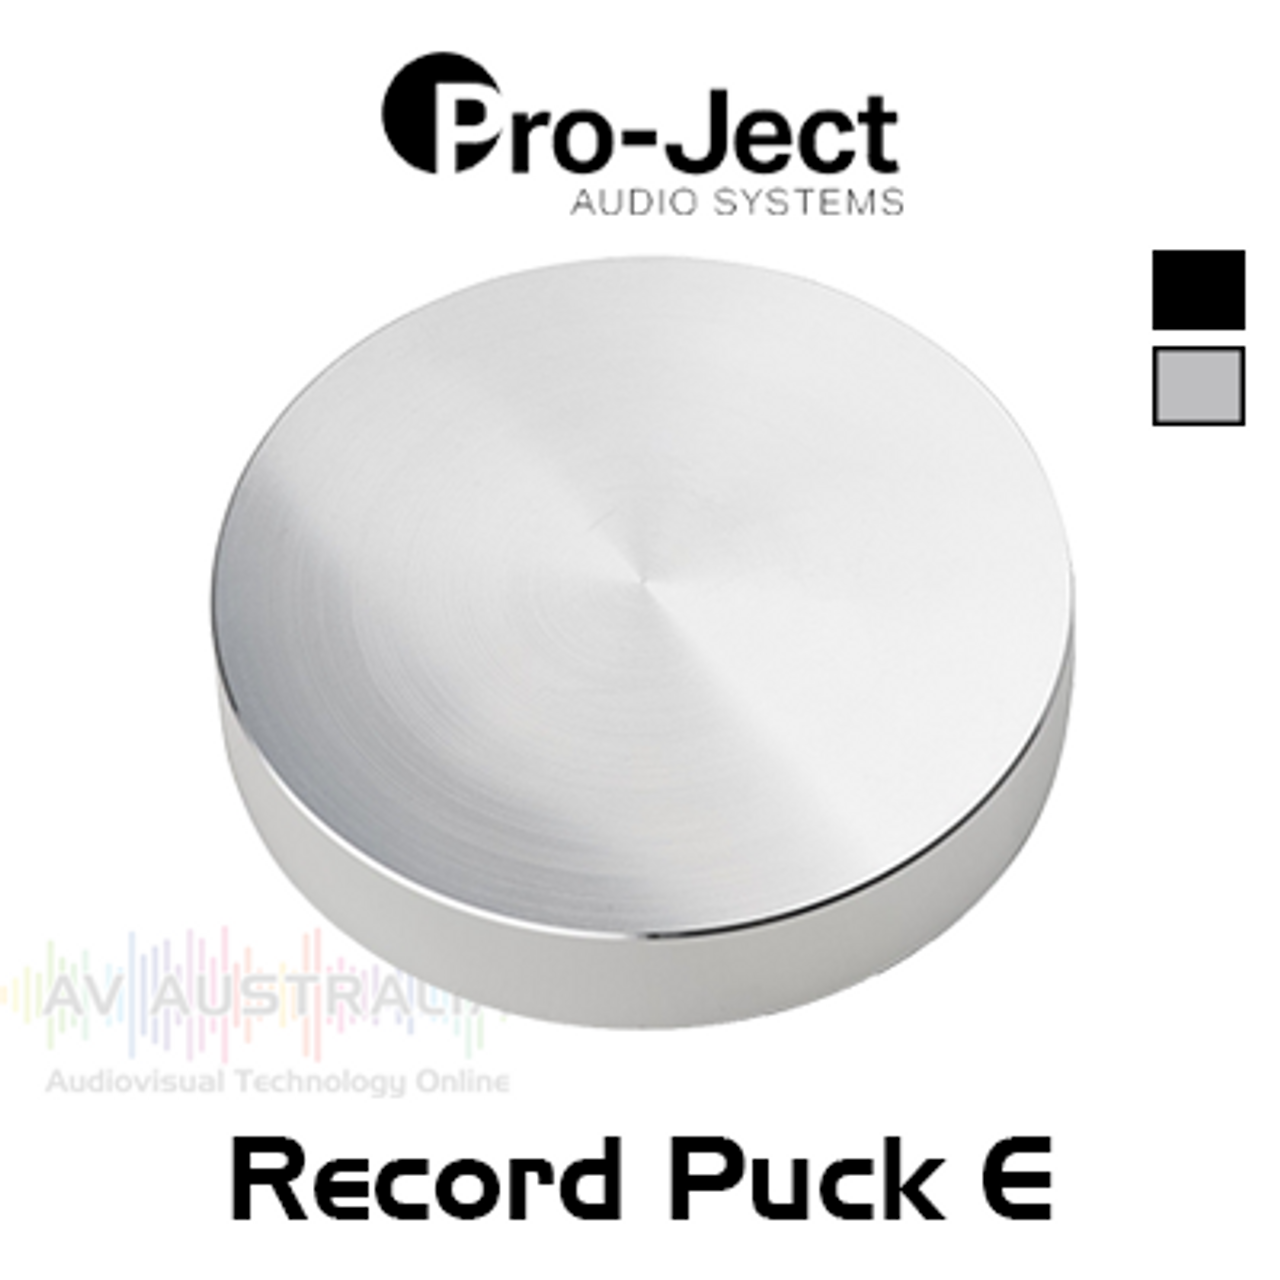 Pro-Ject Record Puck E